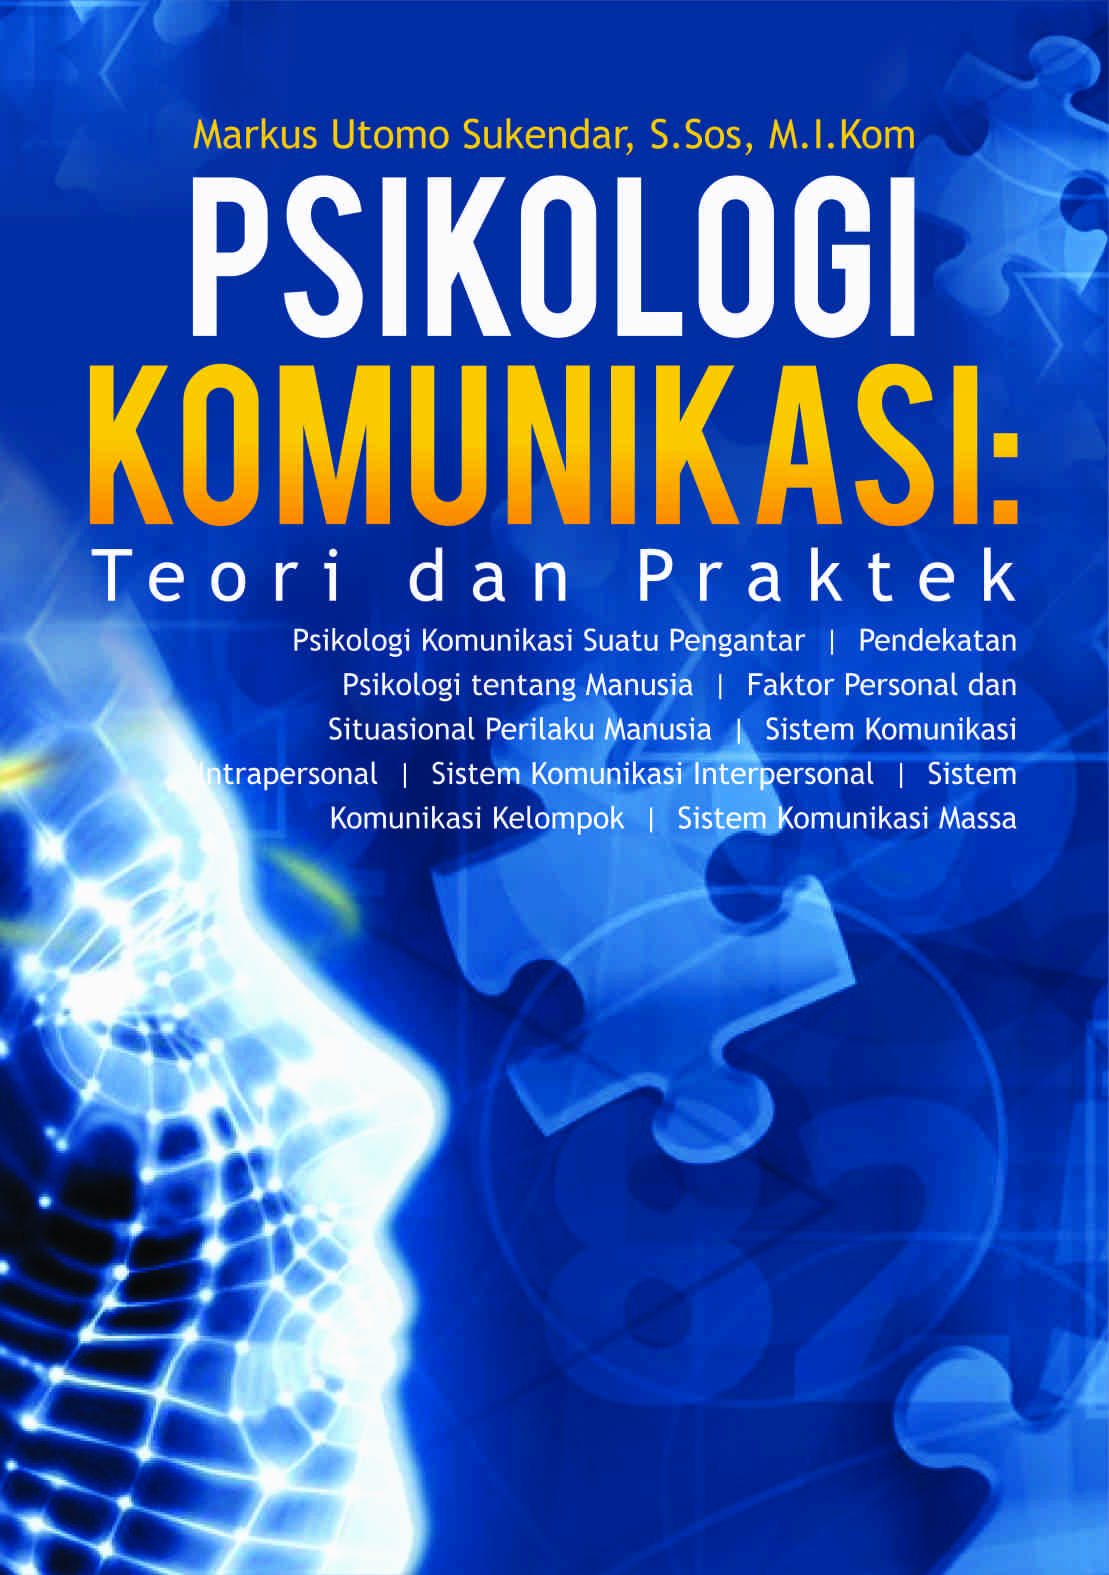 buku psikologi sosial pdf